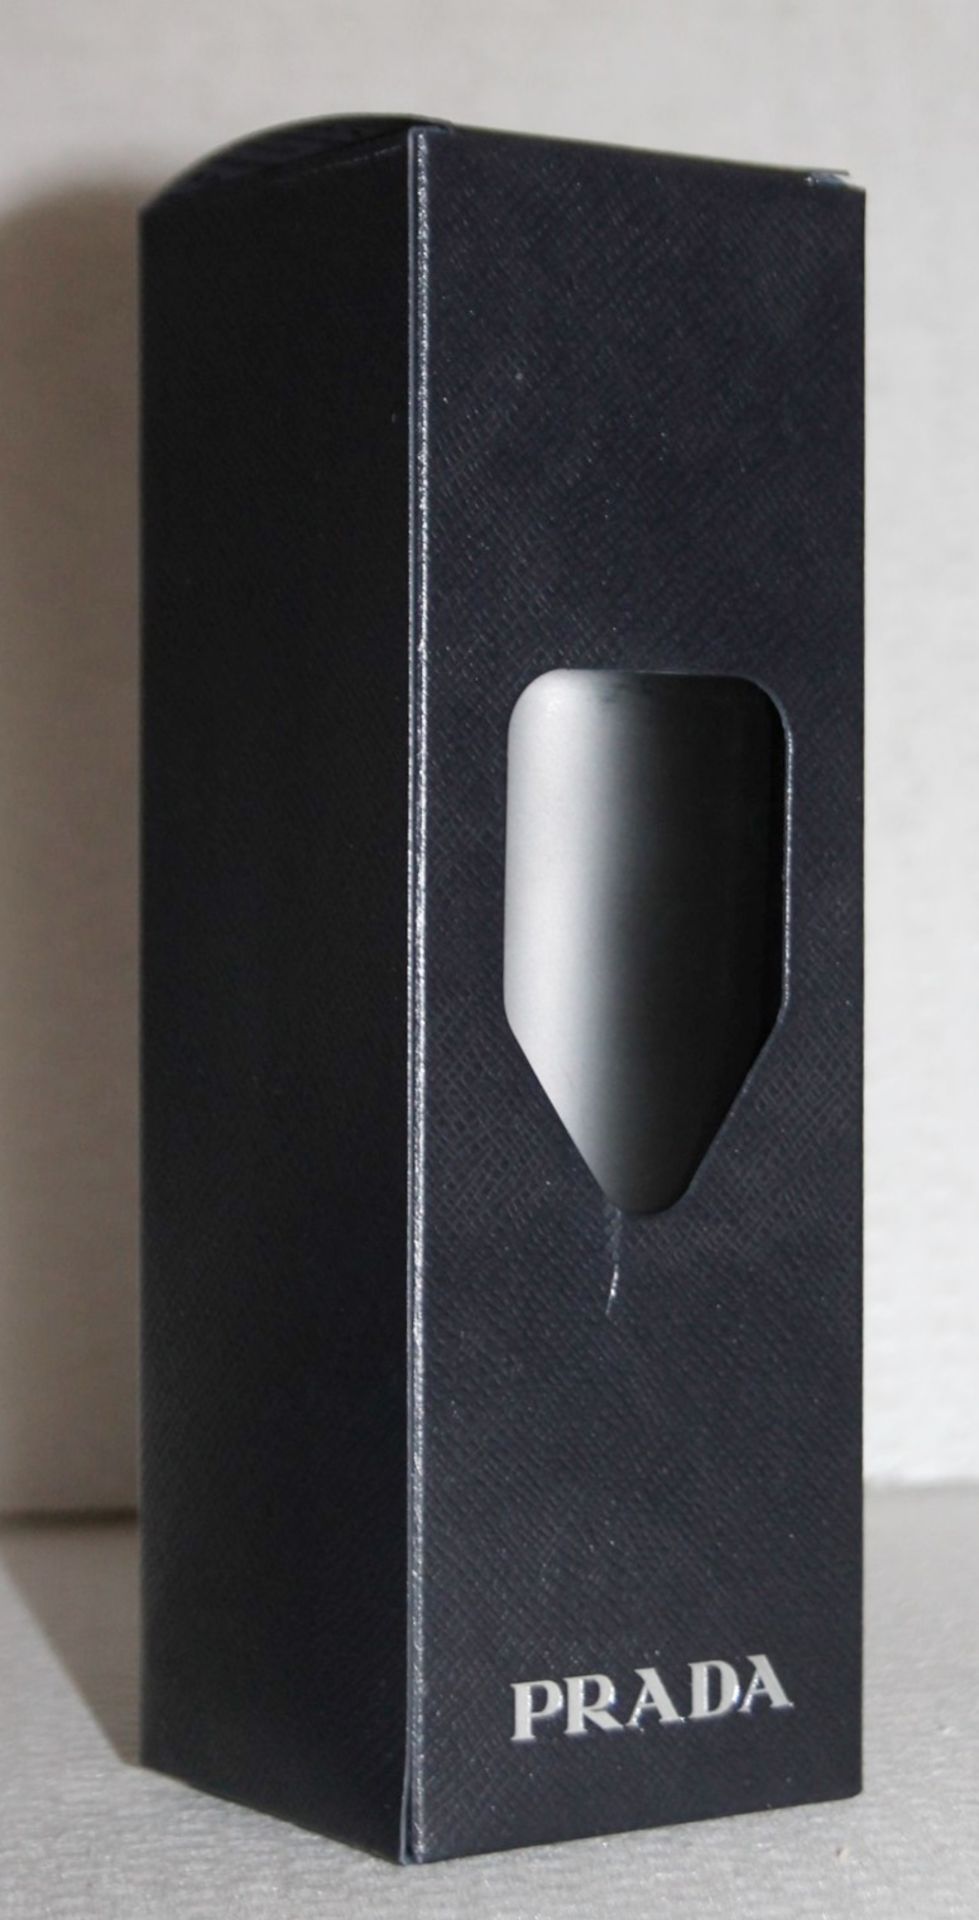 1 x PRADA Stainless Steel Water Bottle In Black, 500 ml - Original Price £90.00 - Unused Boxed Stock - Image 2 of 6